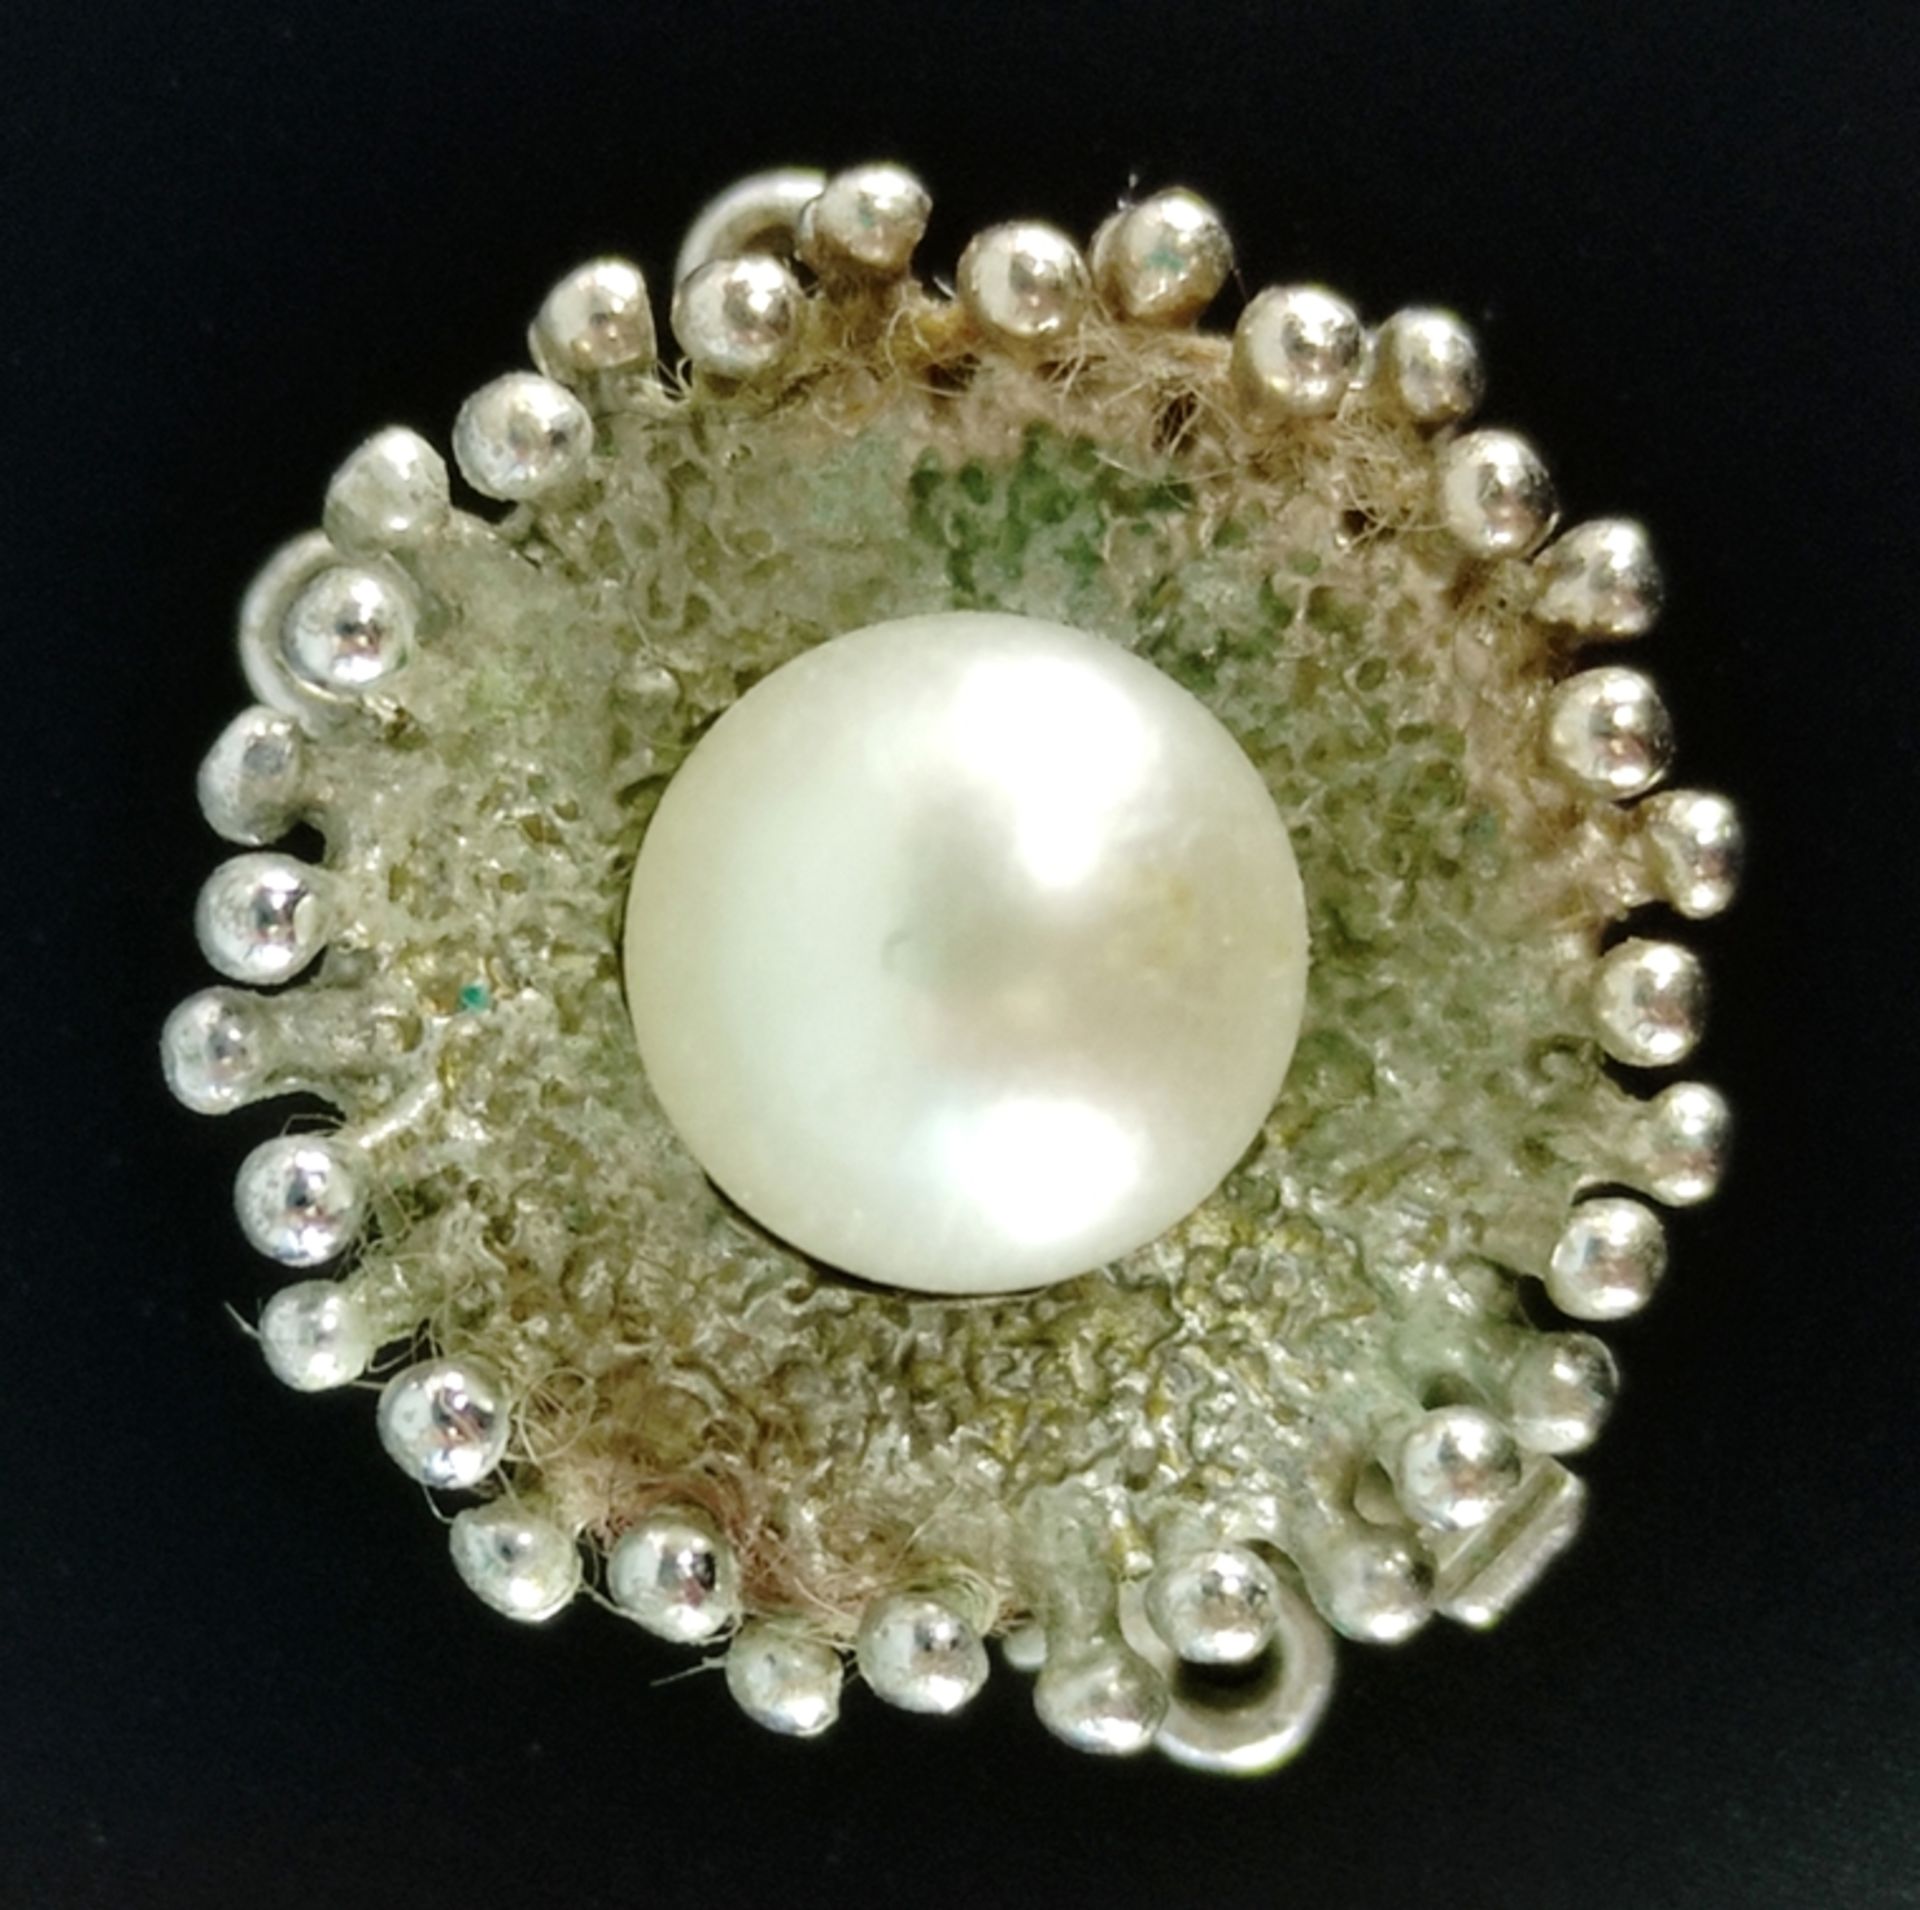 Kettenverschluss, mittig kleine Perle, 585/14K Weißgold, 4g, Durchmesser 1,5cm